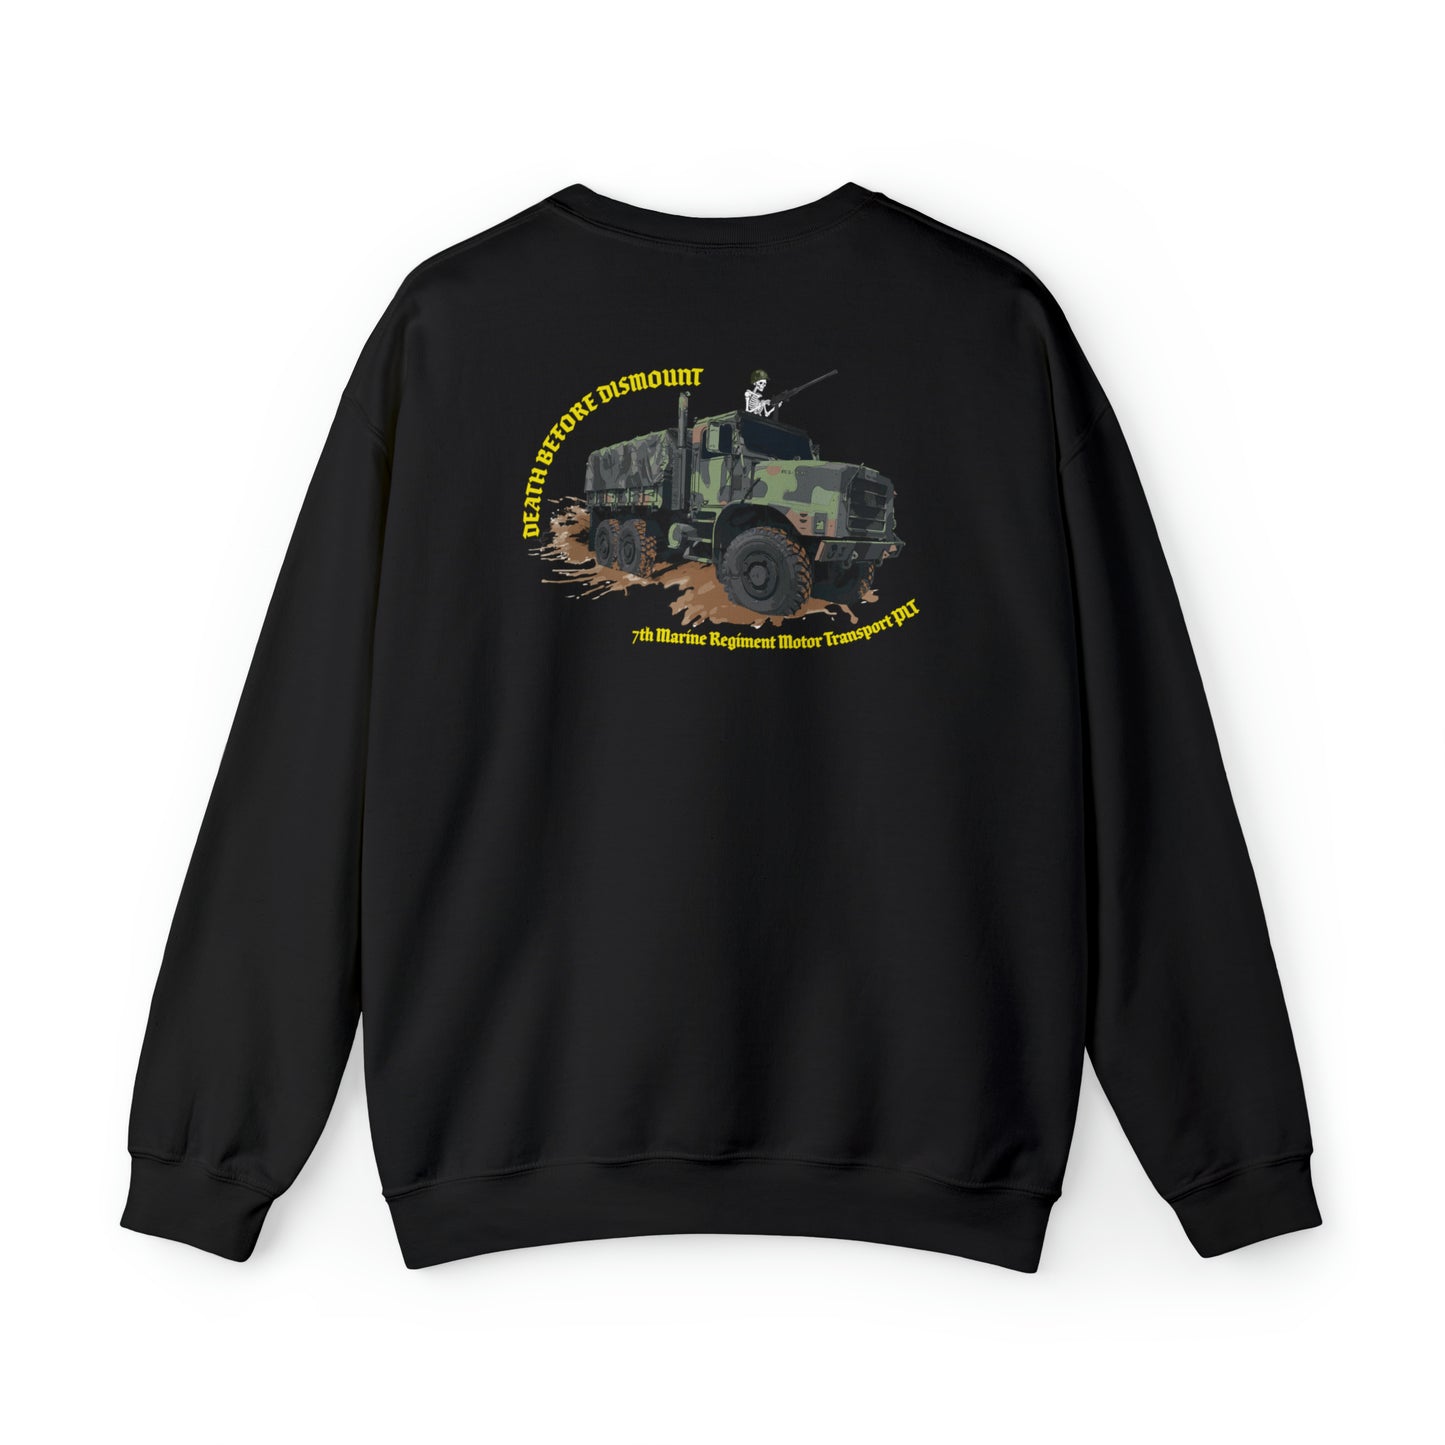 7th Marine Regiment Ripper Trucks Sweatshirt